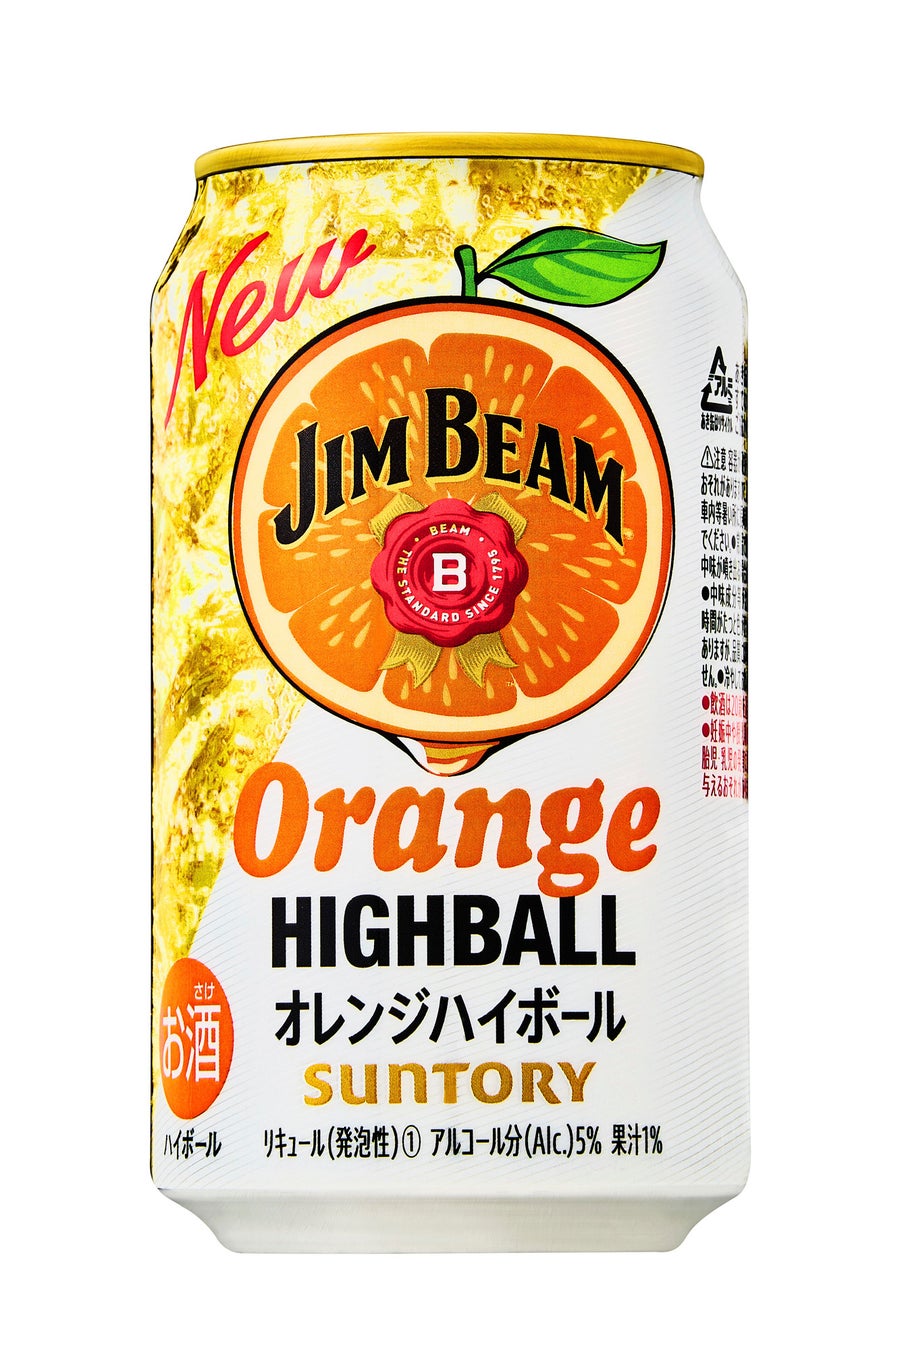 「ジムビーム ハイボール缶〈オレンジハイボール〉」期間限定新発売